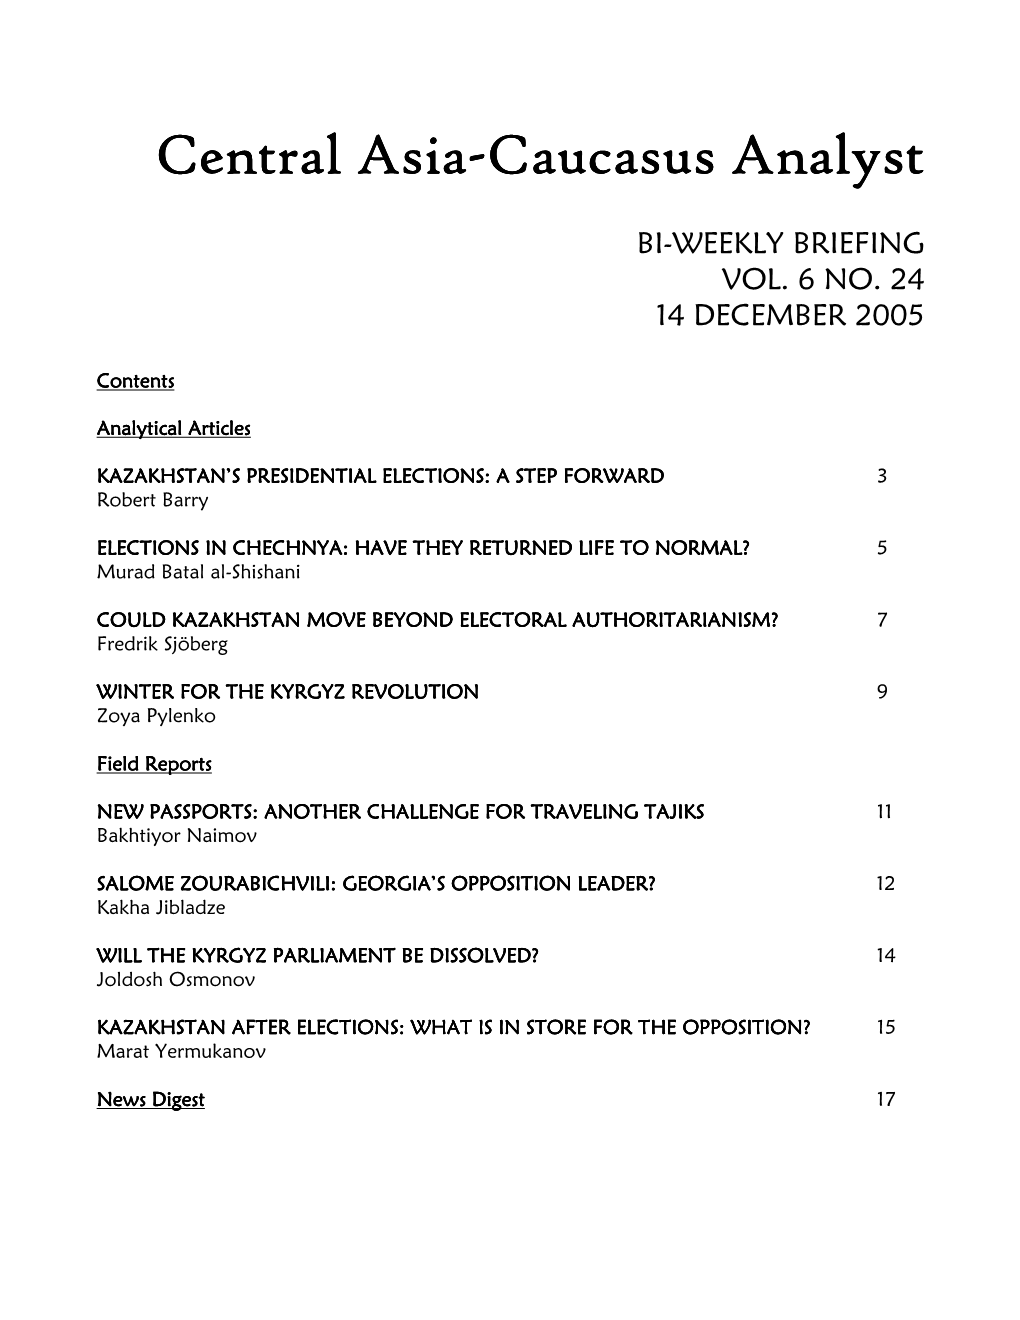 Central Asia-Caucasus Analyst Vol 6, No 24